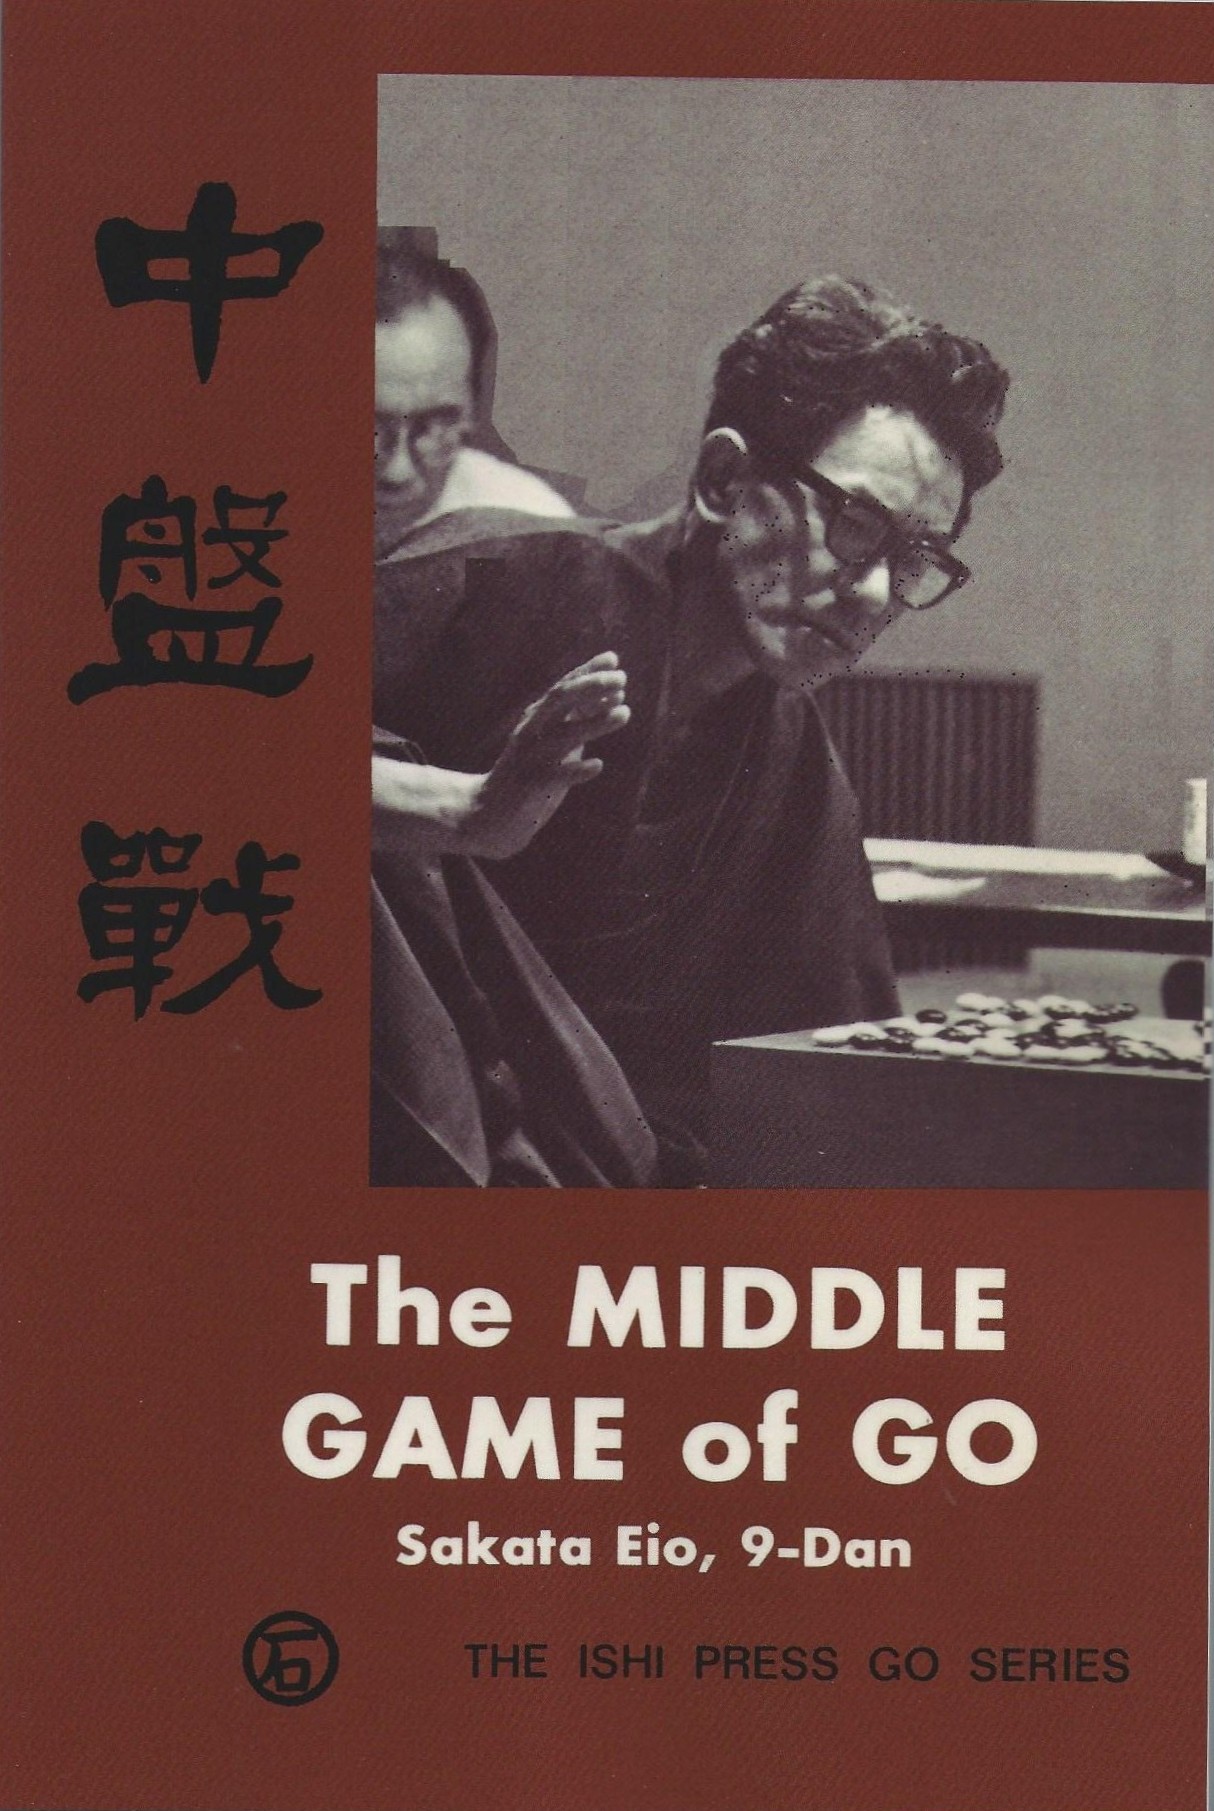 G5 The Middle Game of Go, Sakata Eio